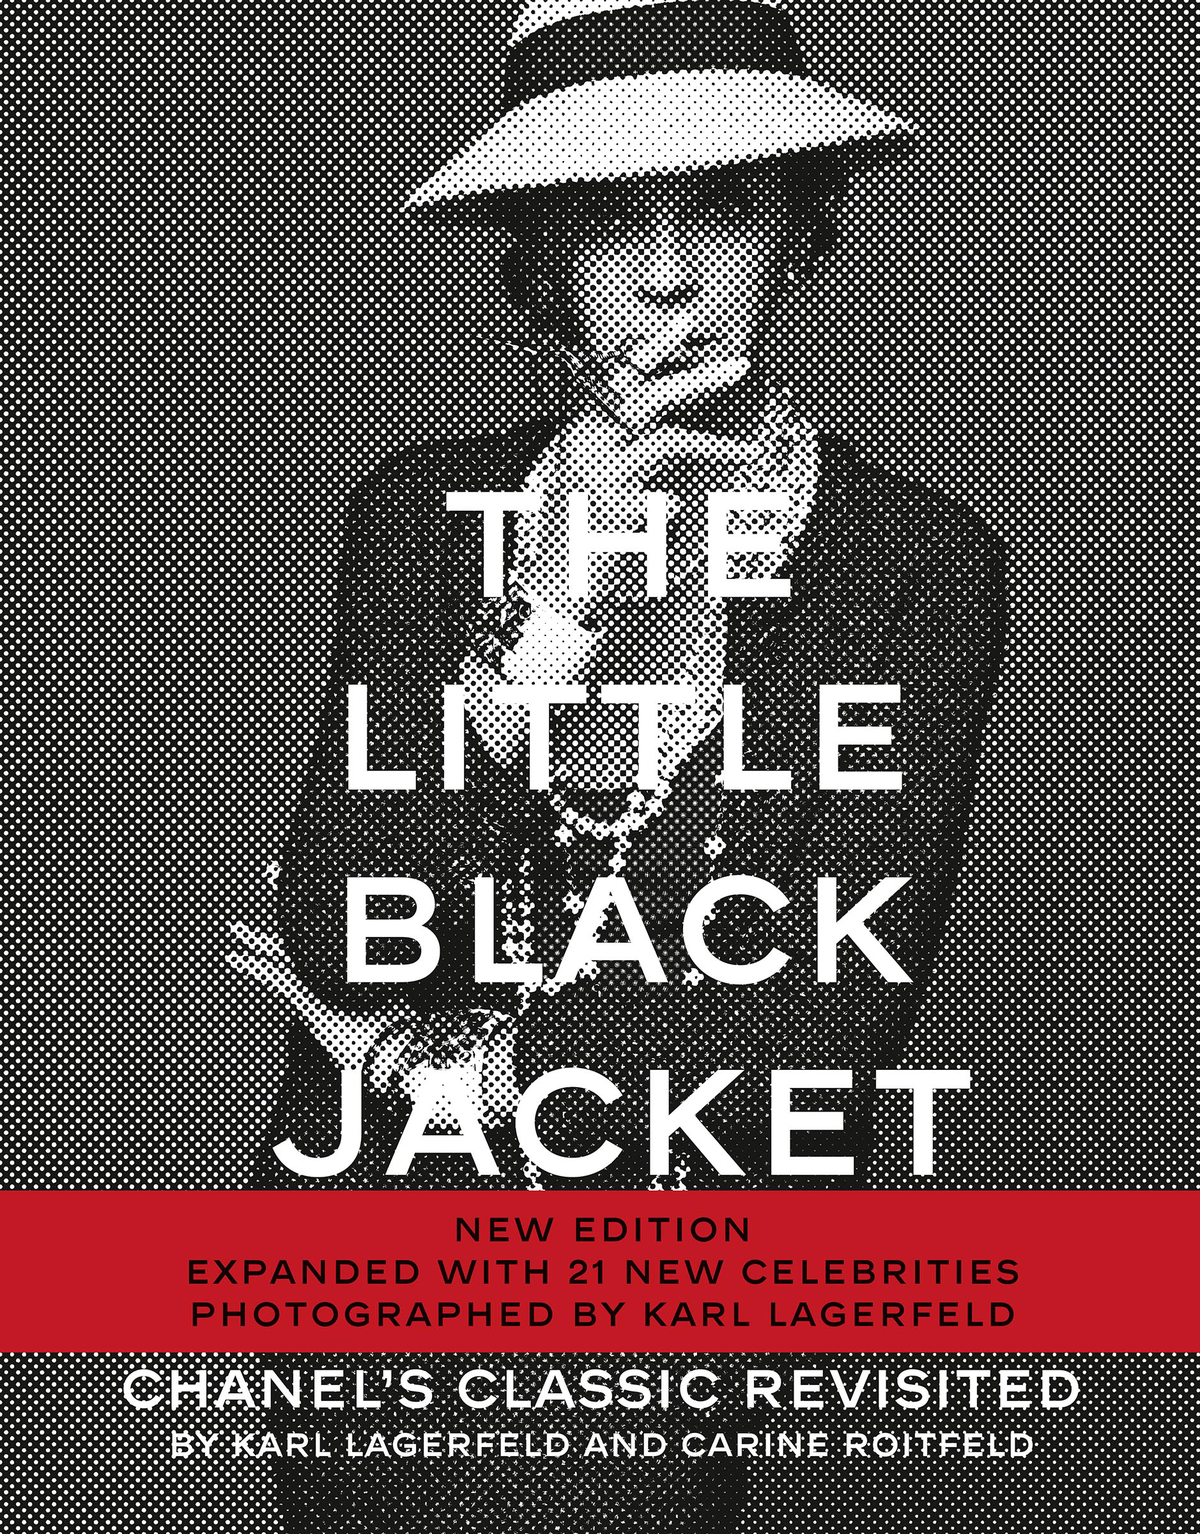 The Little Black Jacket - Karl Lagerfeld, Carine Roitfeld - Steidl Verlag